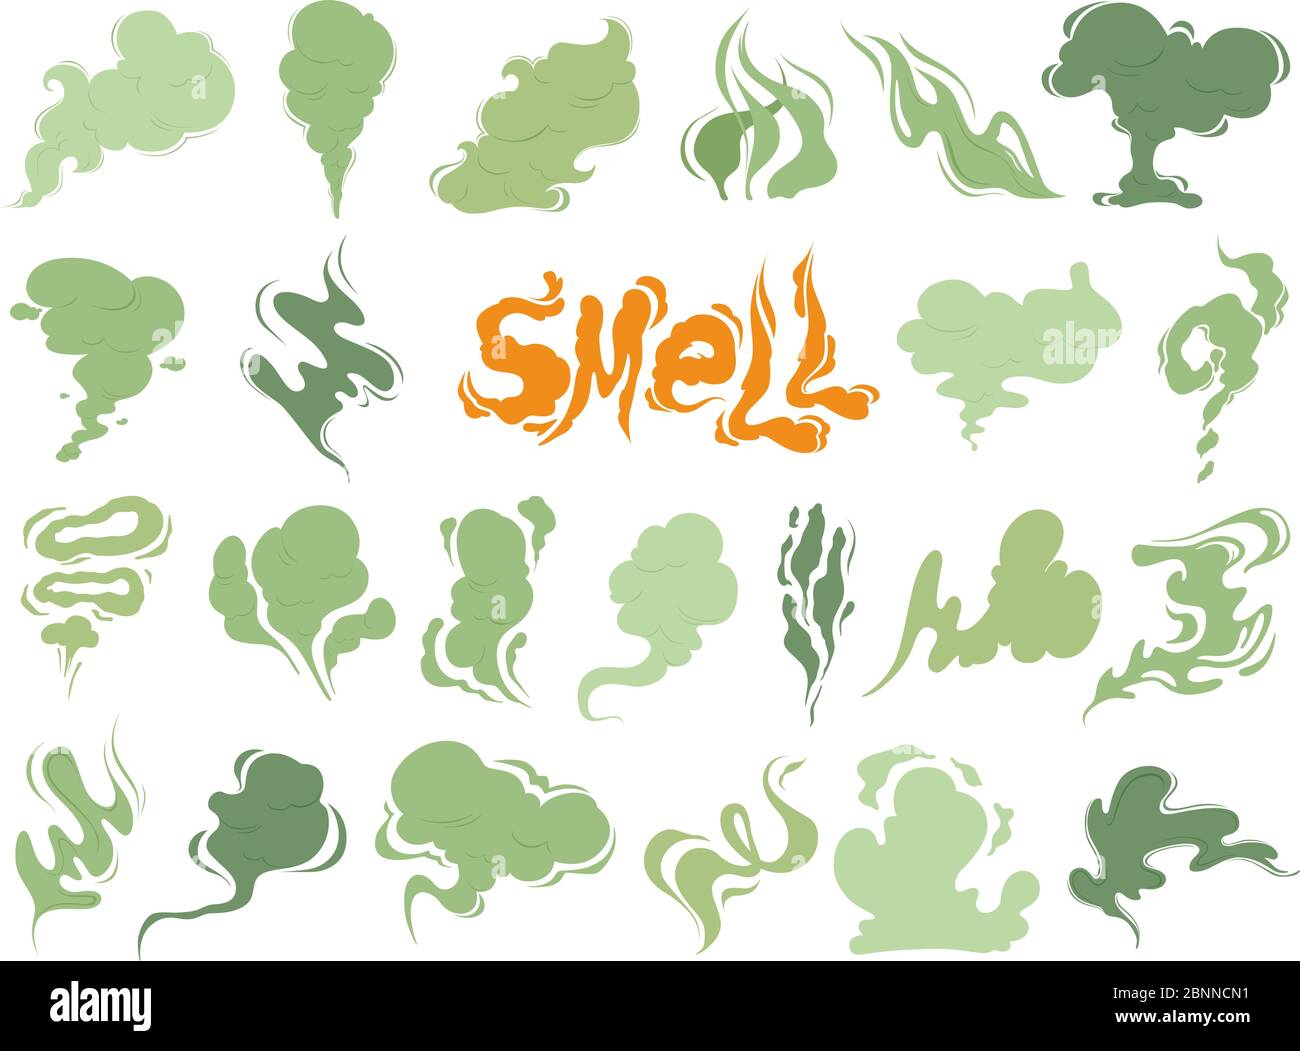 Cattivo odore. Vapore fumo nubi di sigarette o vecchie icone vettoriali di cottura cibo scaduto cartoni animati Illustrazione Vettoriale